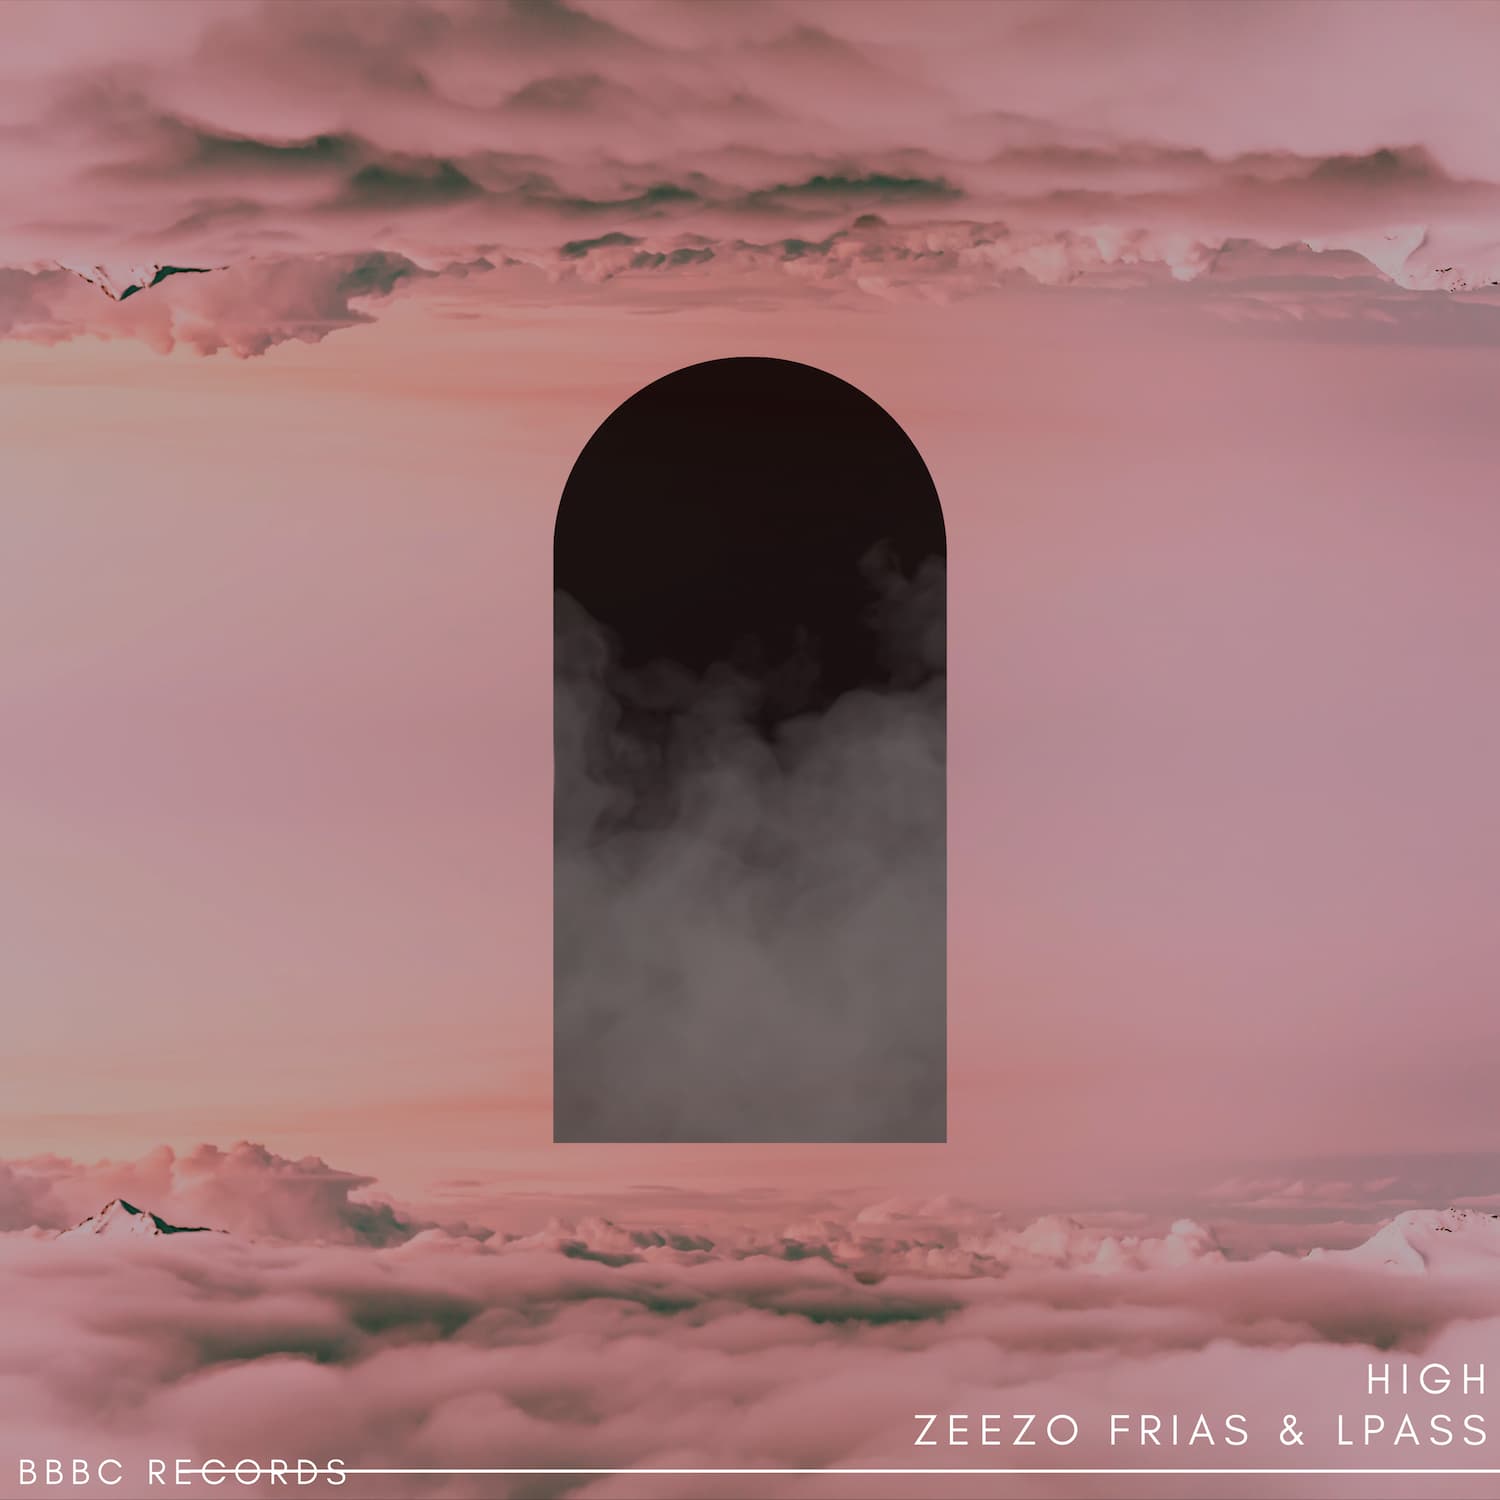 Zeezo lança "High" por sua label BBBC Records em collab com LPass